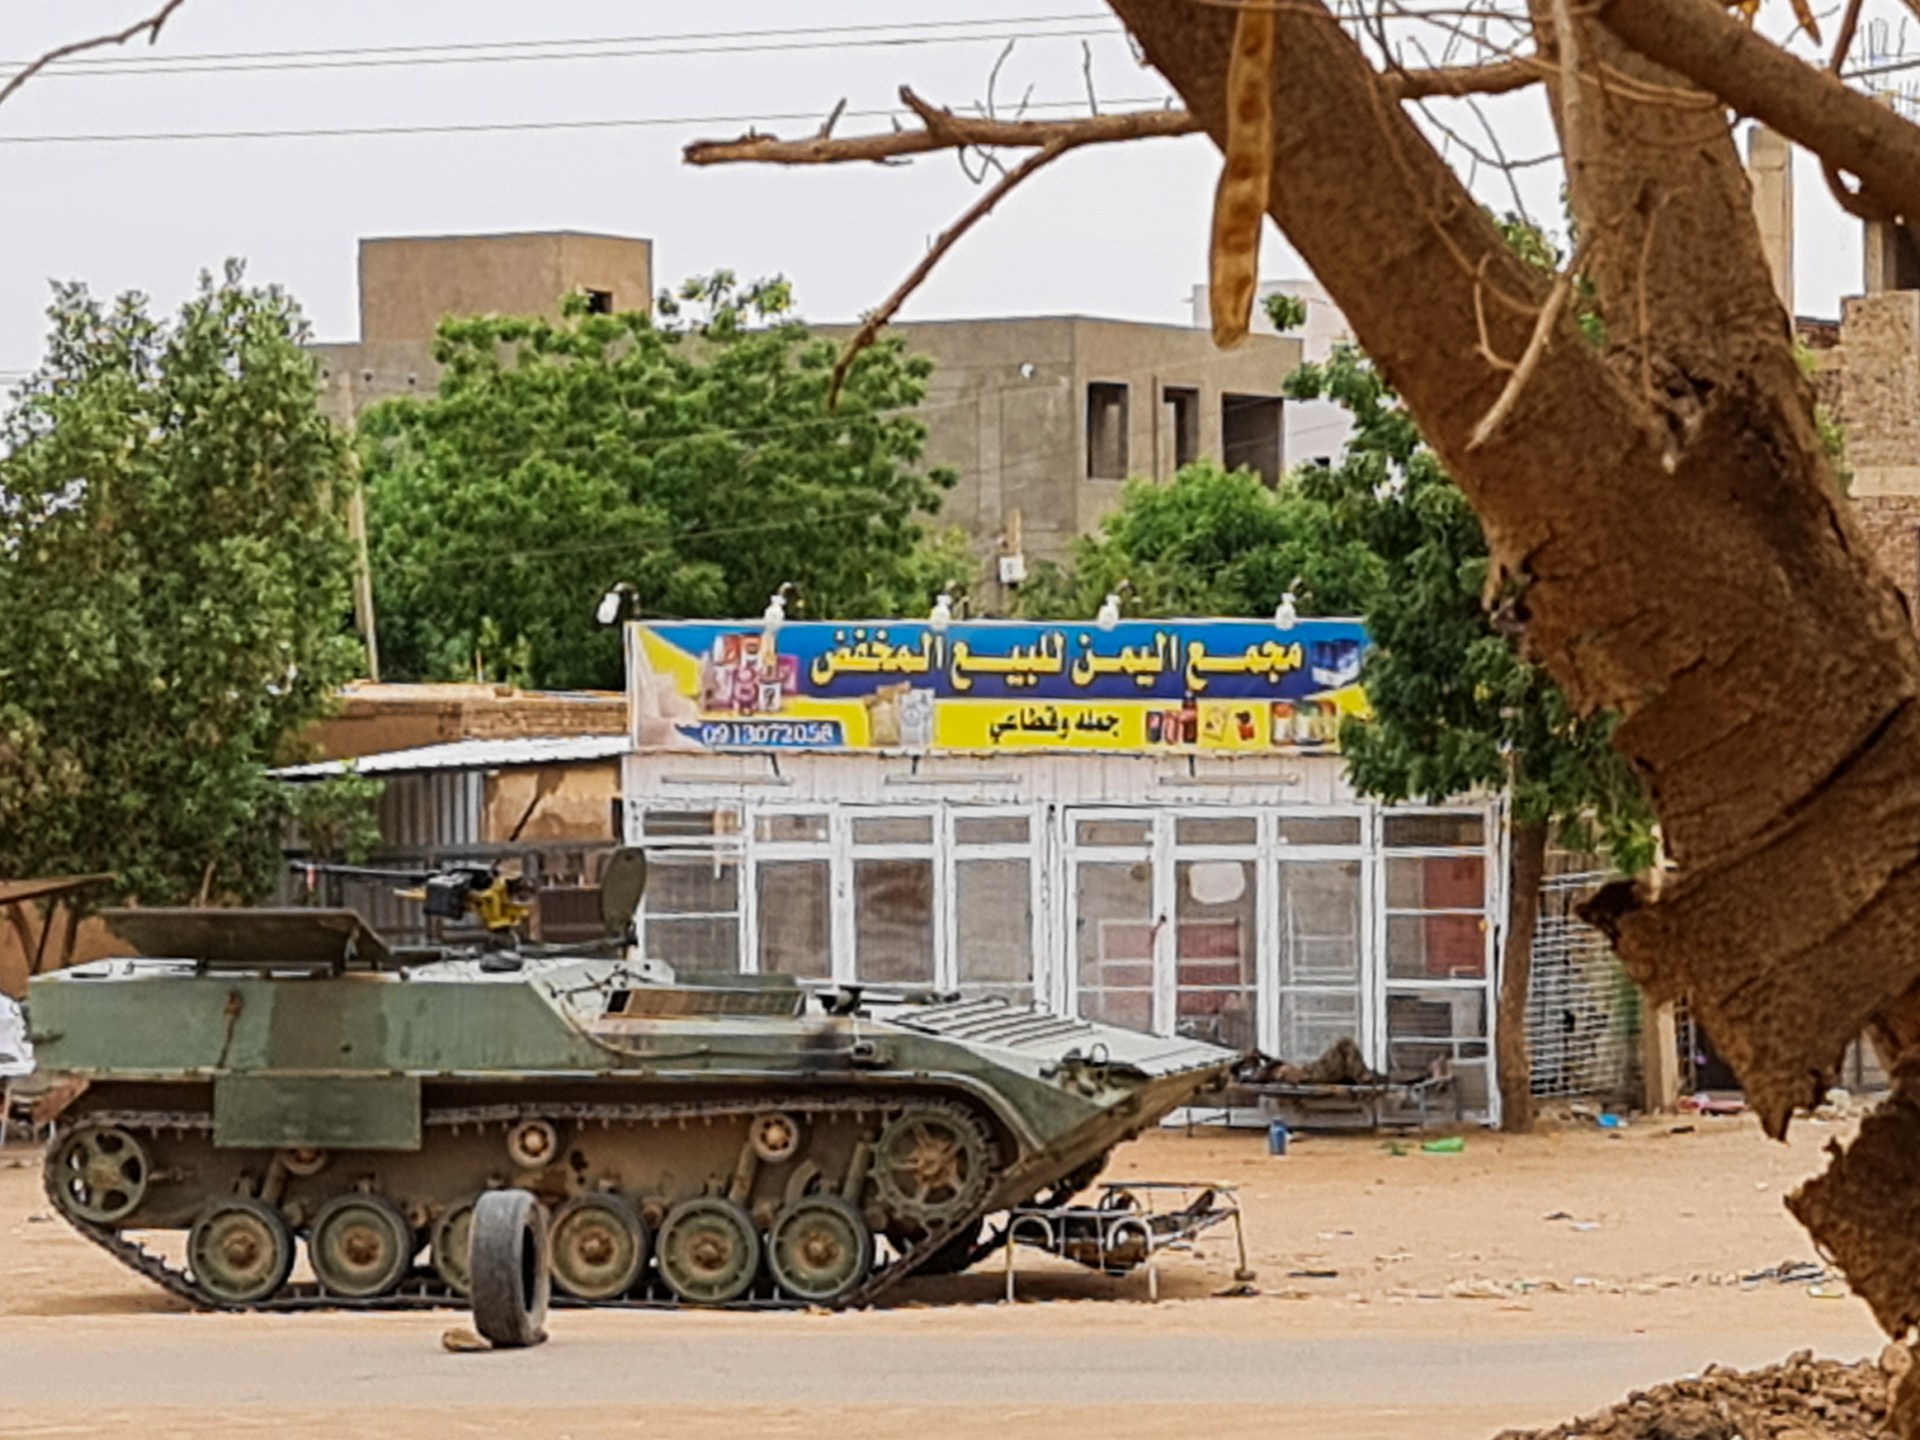 PBB mengirim kepala bantuan ke Sudan atas situasi yang ‘belum pernah terjadi sebelumnya’ |  Berita Konflik